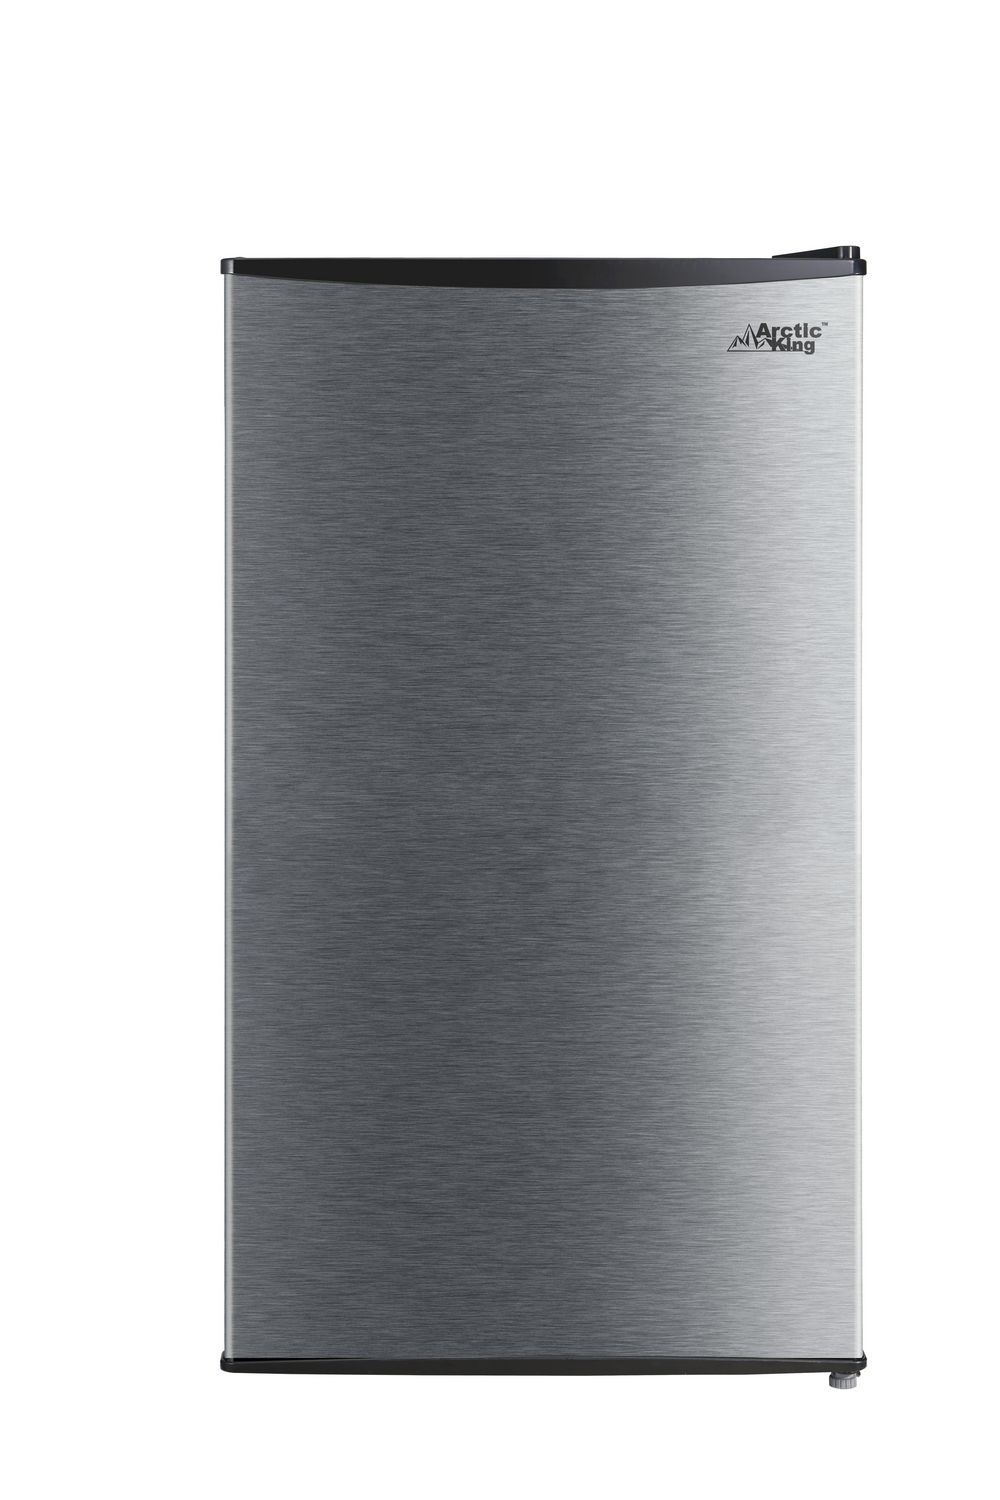 Réfrigérateur compact Arctic King, 3,3 pi³, porte simple, E-star